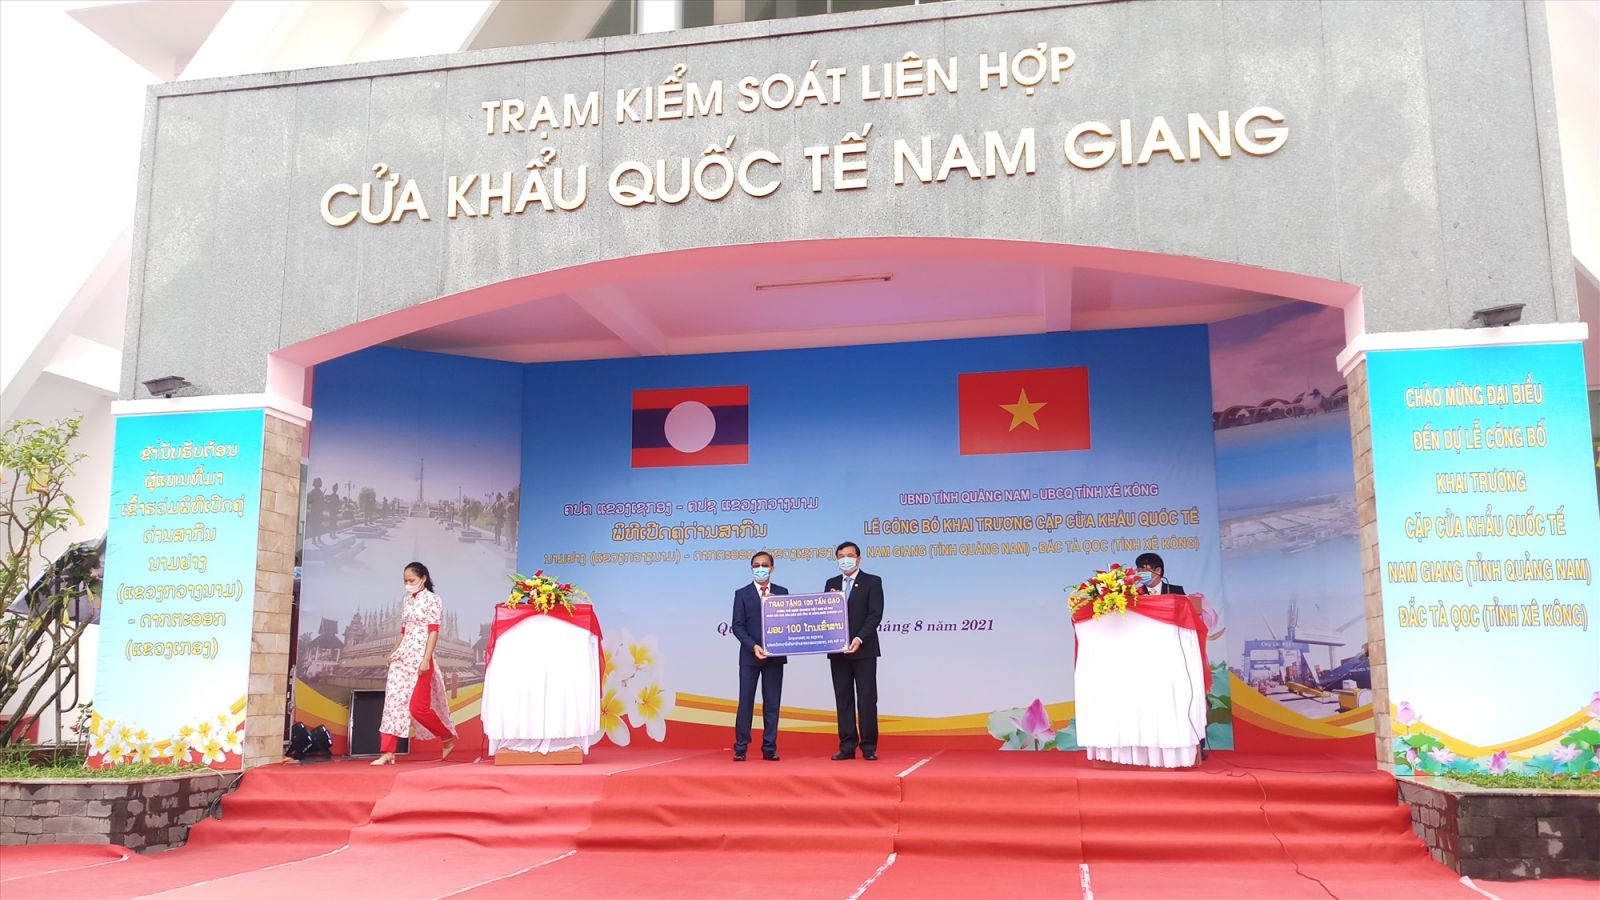 Lãnh đạo tỉnh Quảng Nam cũng trao tặng 100 tấn gạo hỗ trợ người dân Sê Kông..